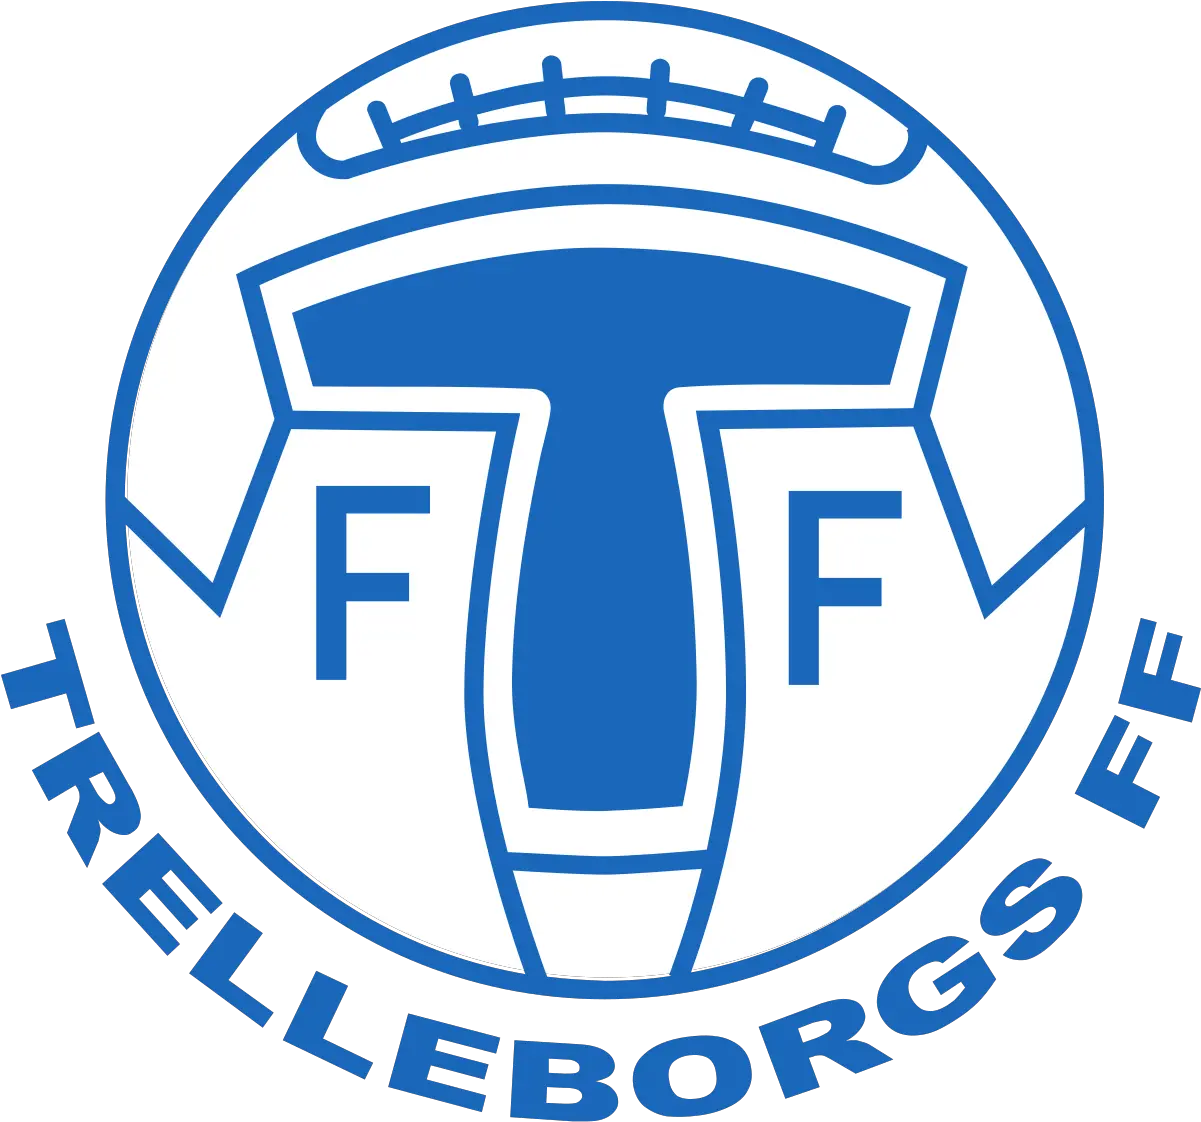 Trelleborgs Ff Trelleborgs Ff Logo Png Ff Logo